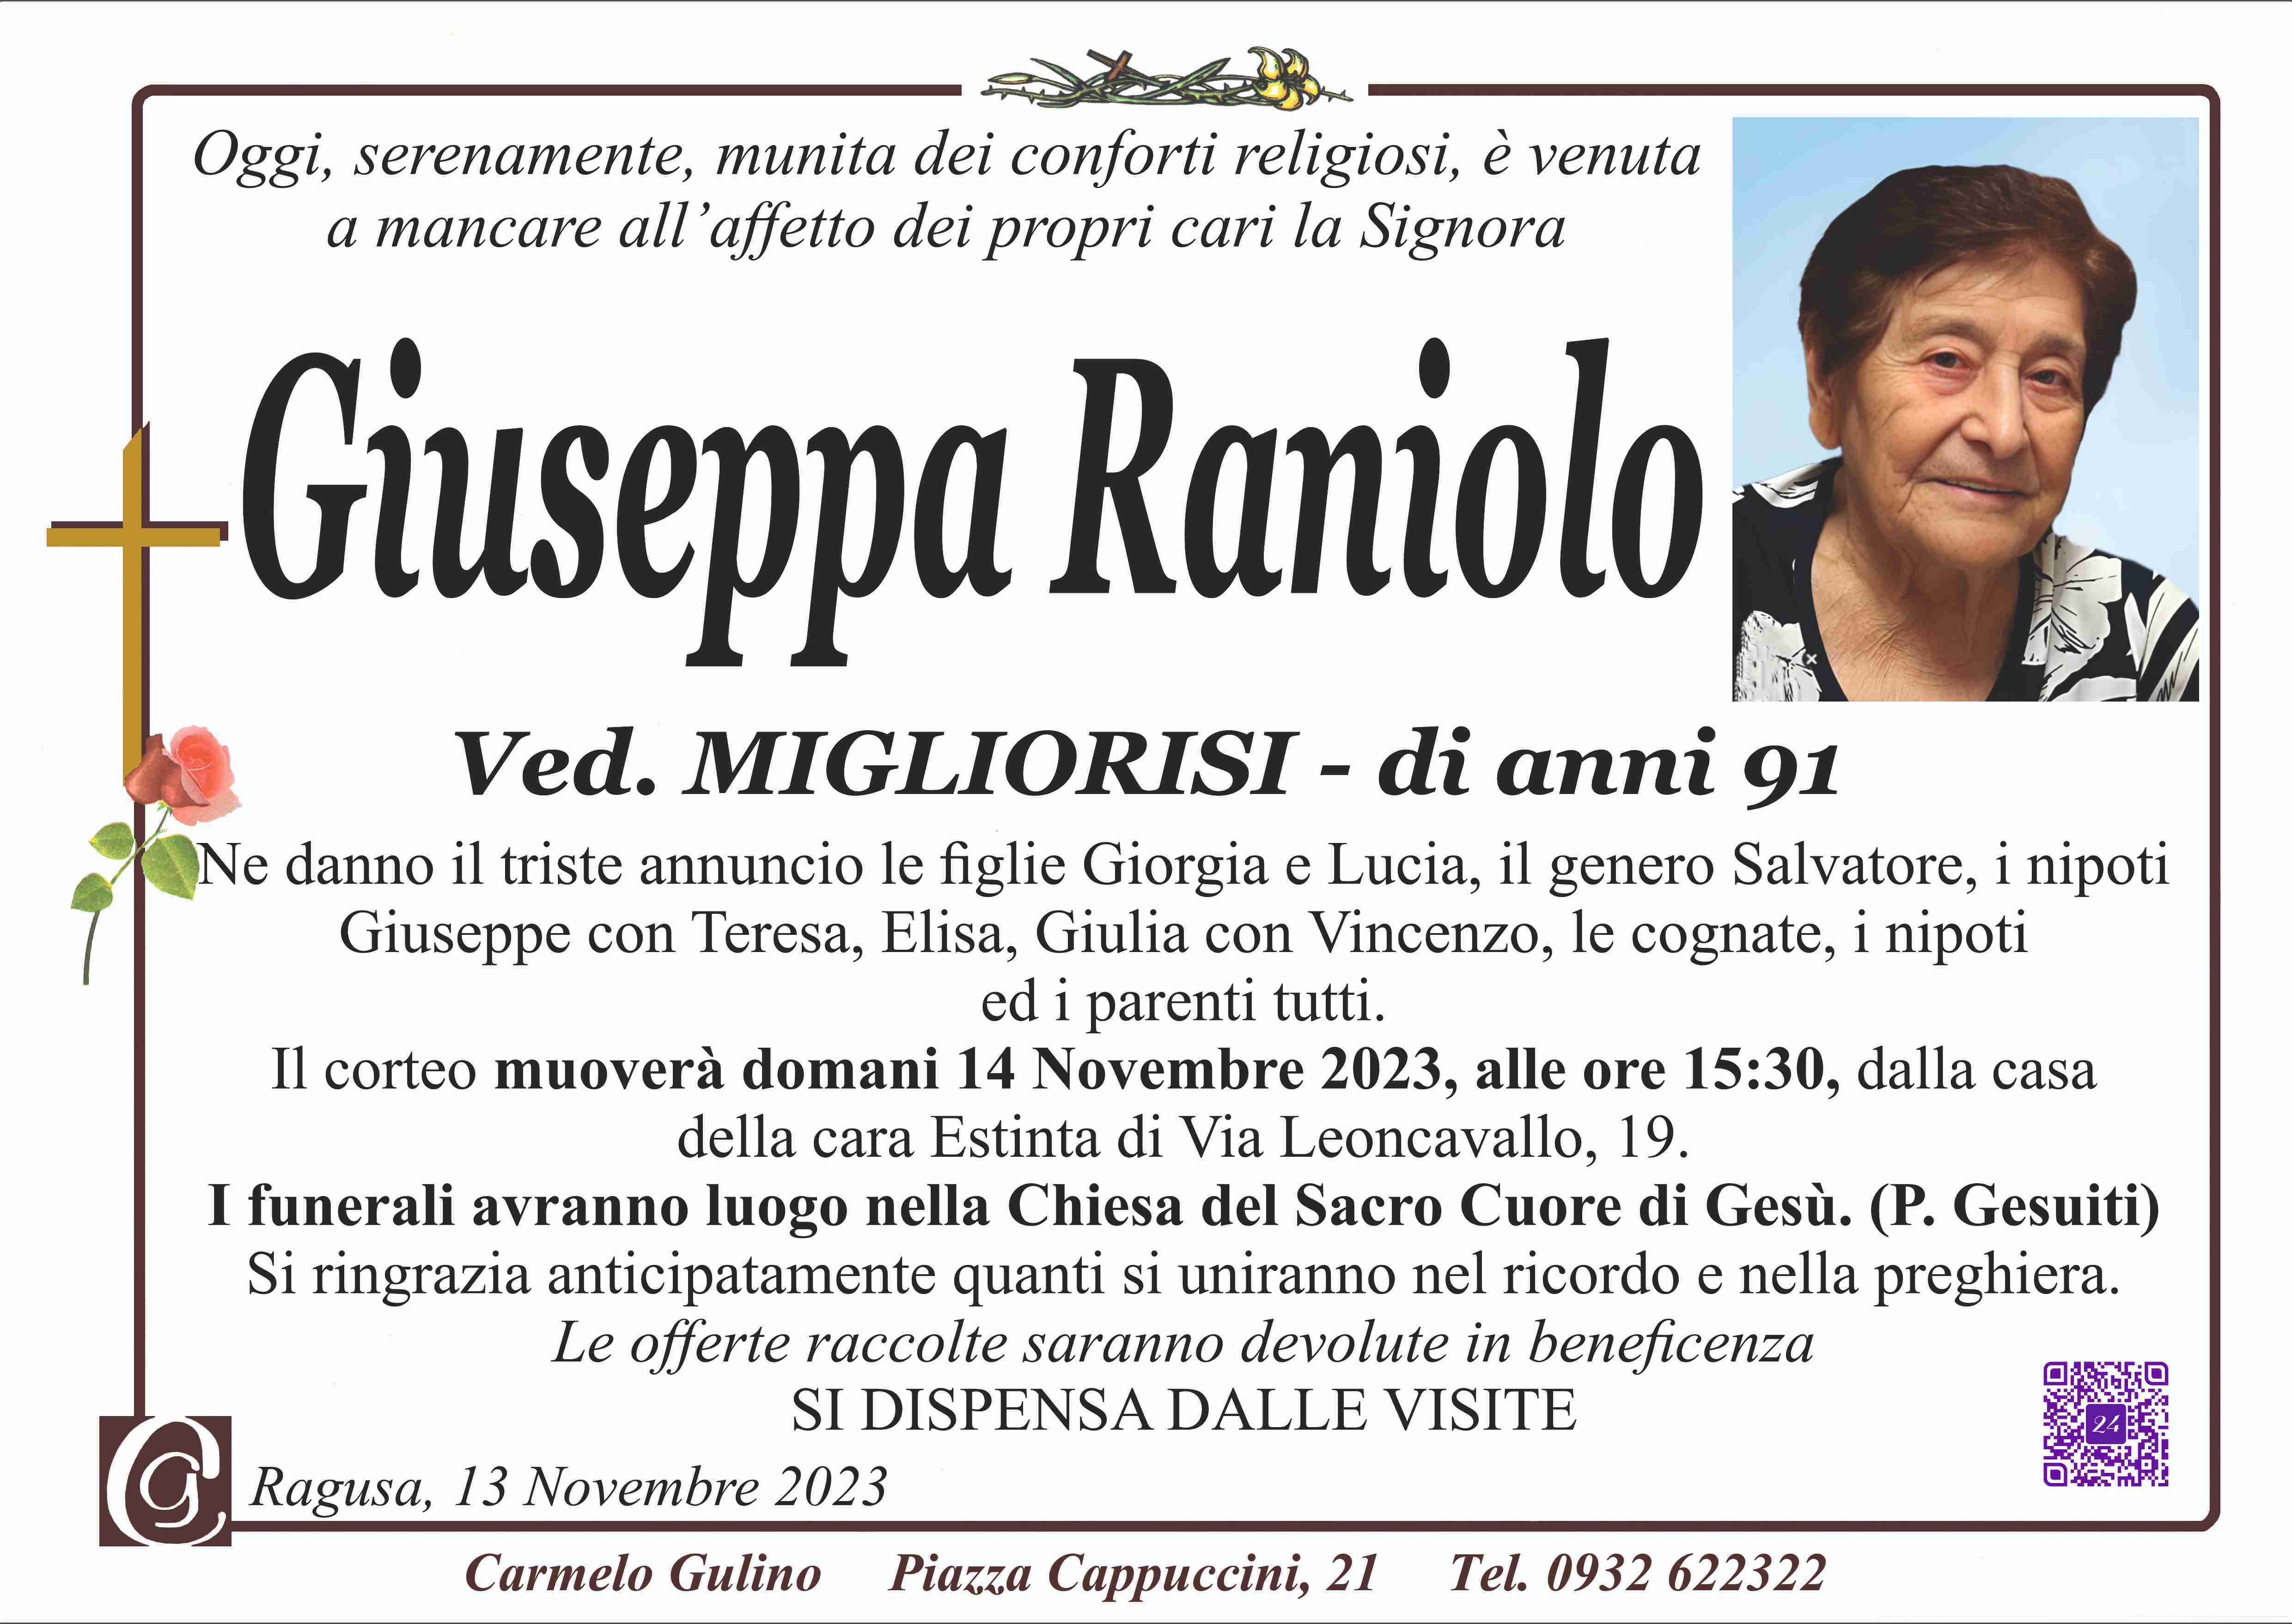 Giuseppa Raniolo